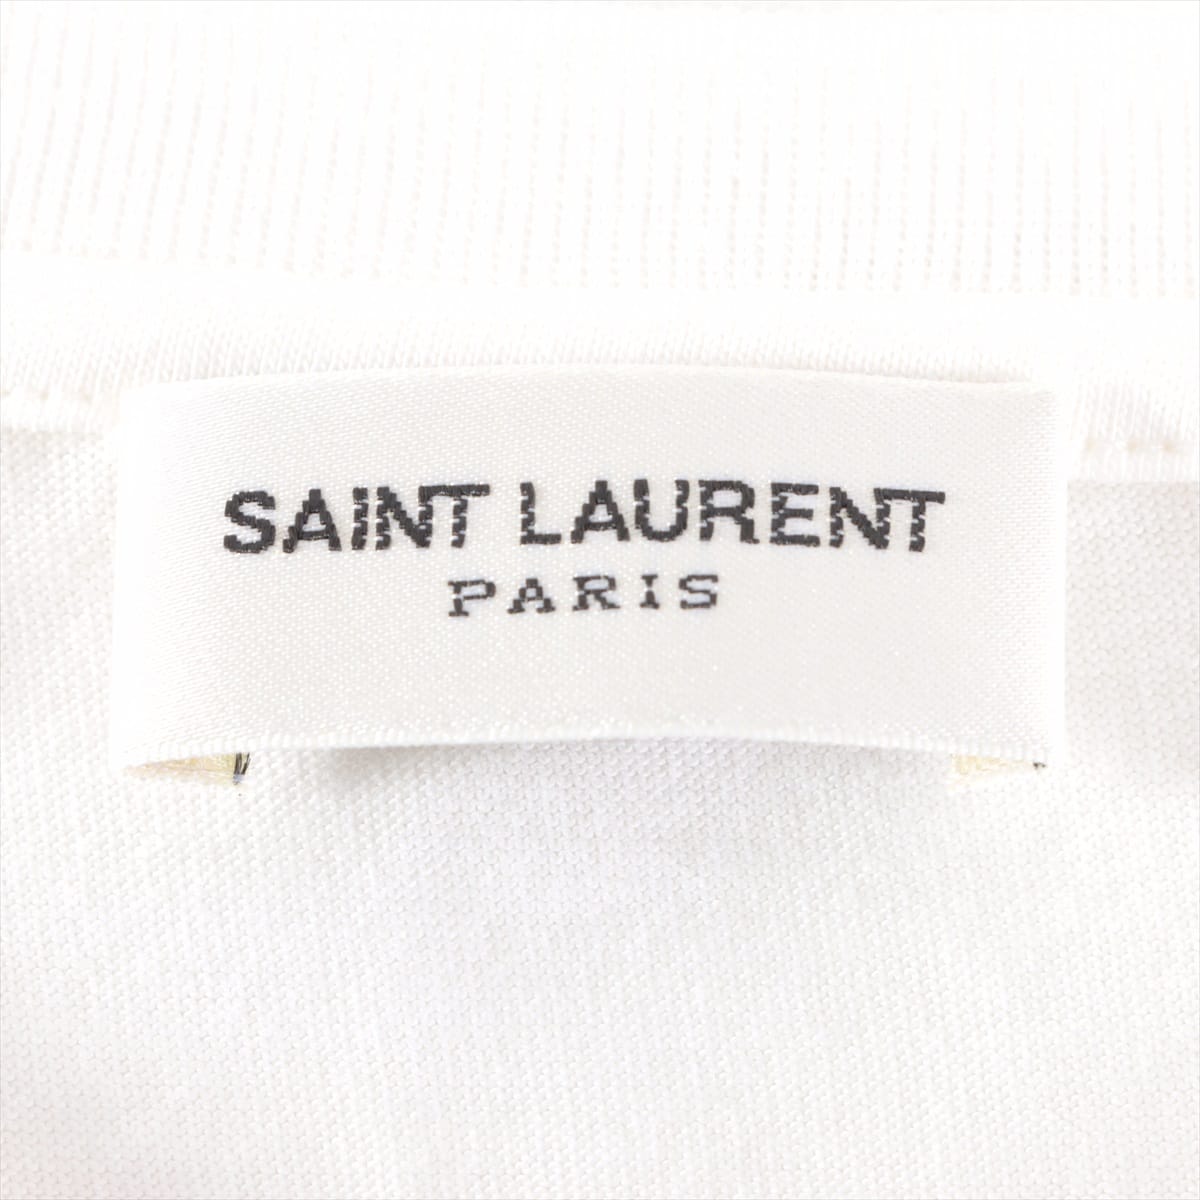 Saint Laurent Paris 21 years Cotton T-shirt M Men's White  663278